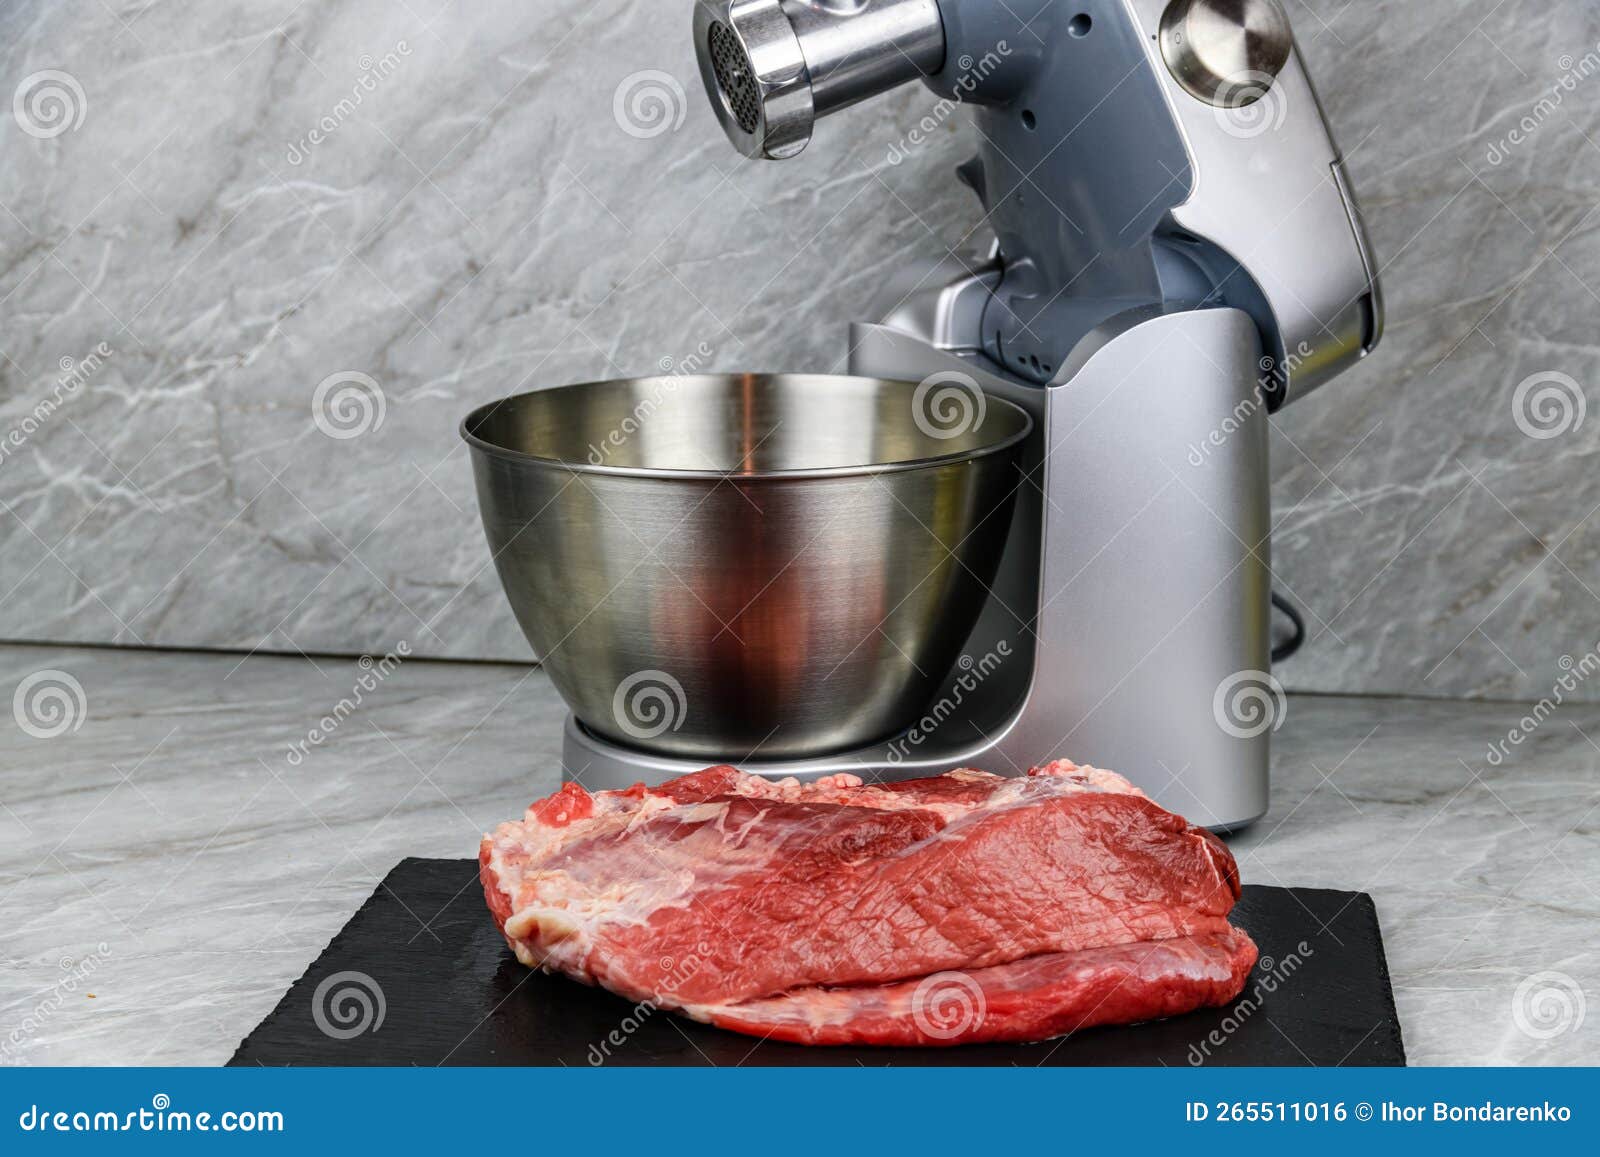 https://thumbs.dreamstime.com/z/moderno-procesador-de-alimentos-con-molino-carne-y-paz-cerdo-en-una-mesa-cocina-265511016.jpg